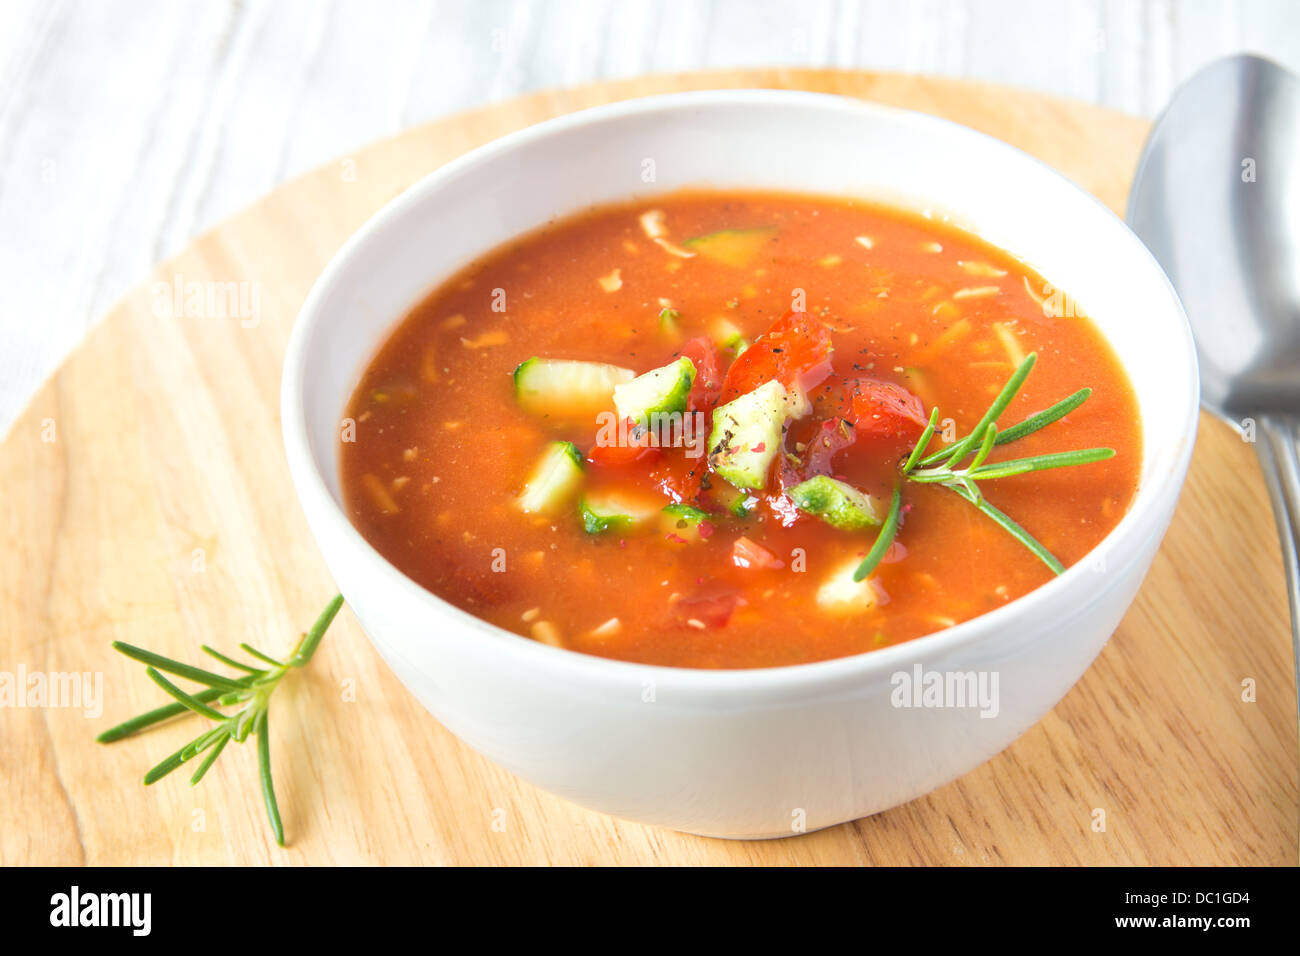 Delizioso dolce freddo gustosa minestra di pomodoro gazpacho in bianco ciotola con cucchiaio su tavola di legno, primo piano, orizzontale Foto Stock